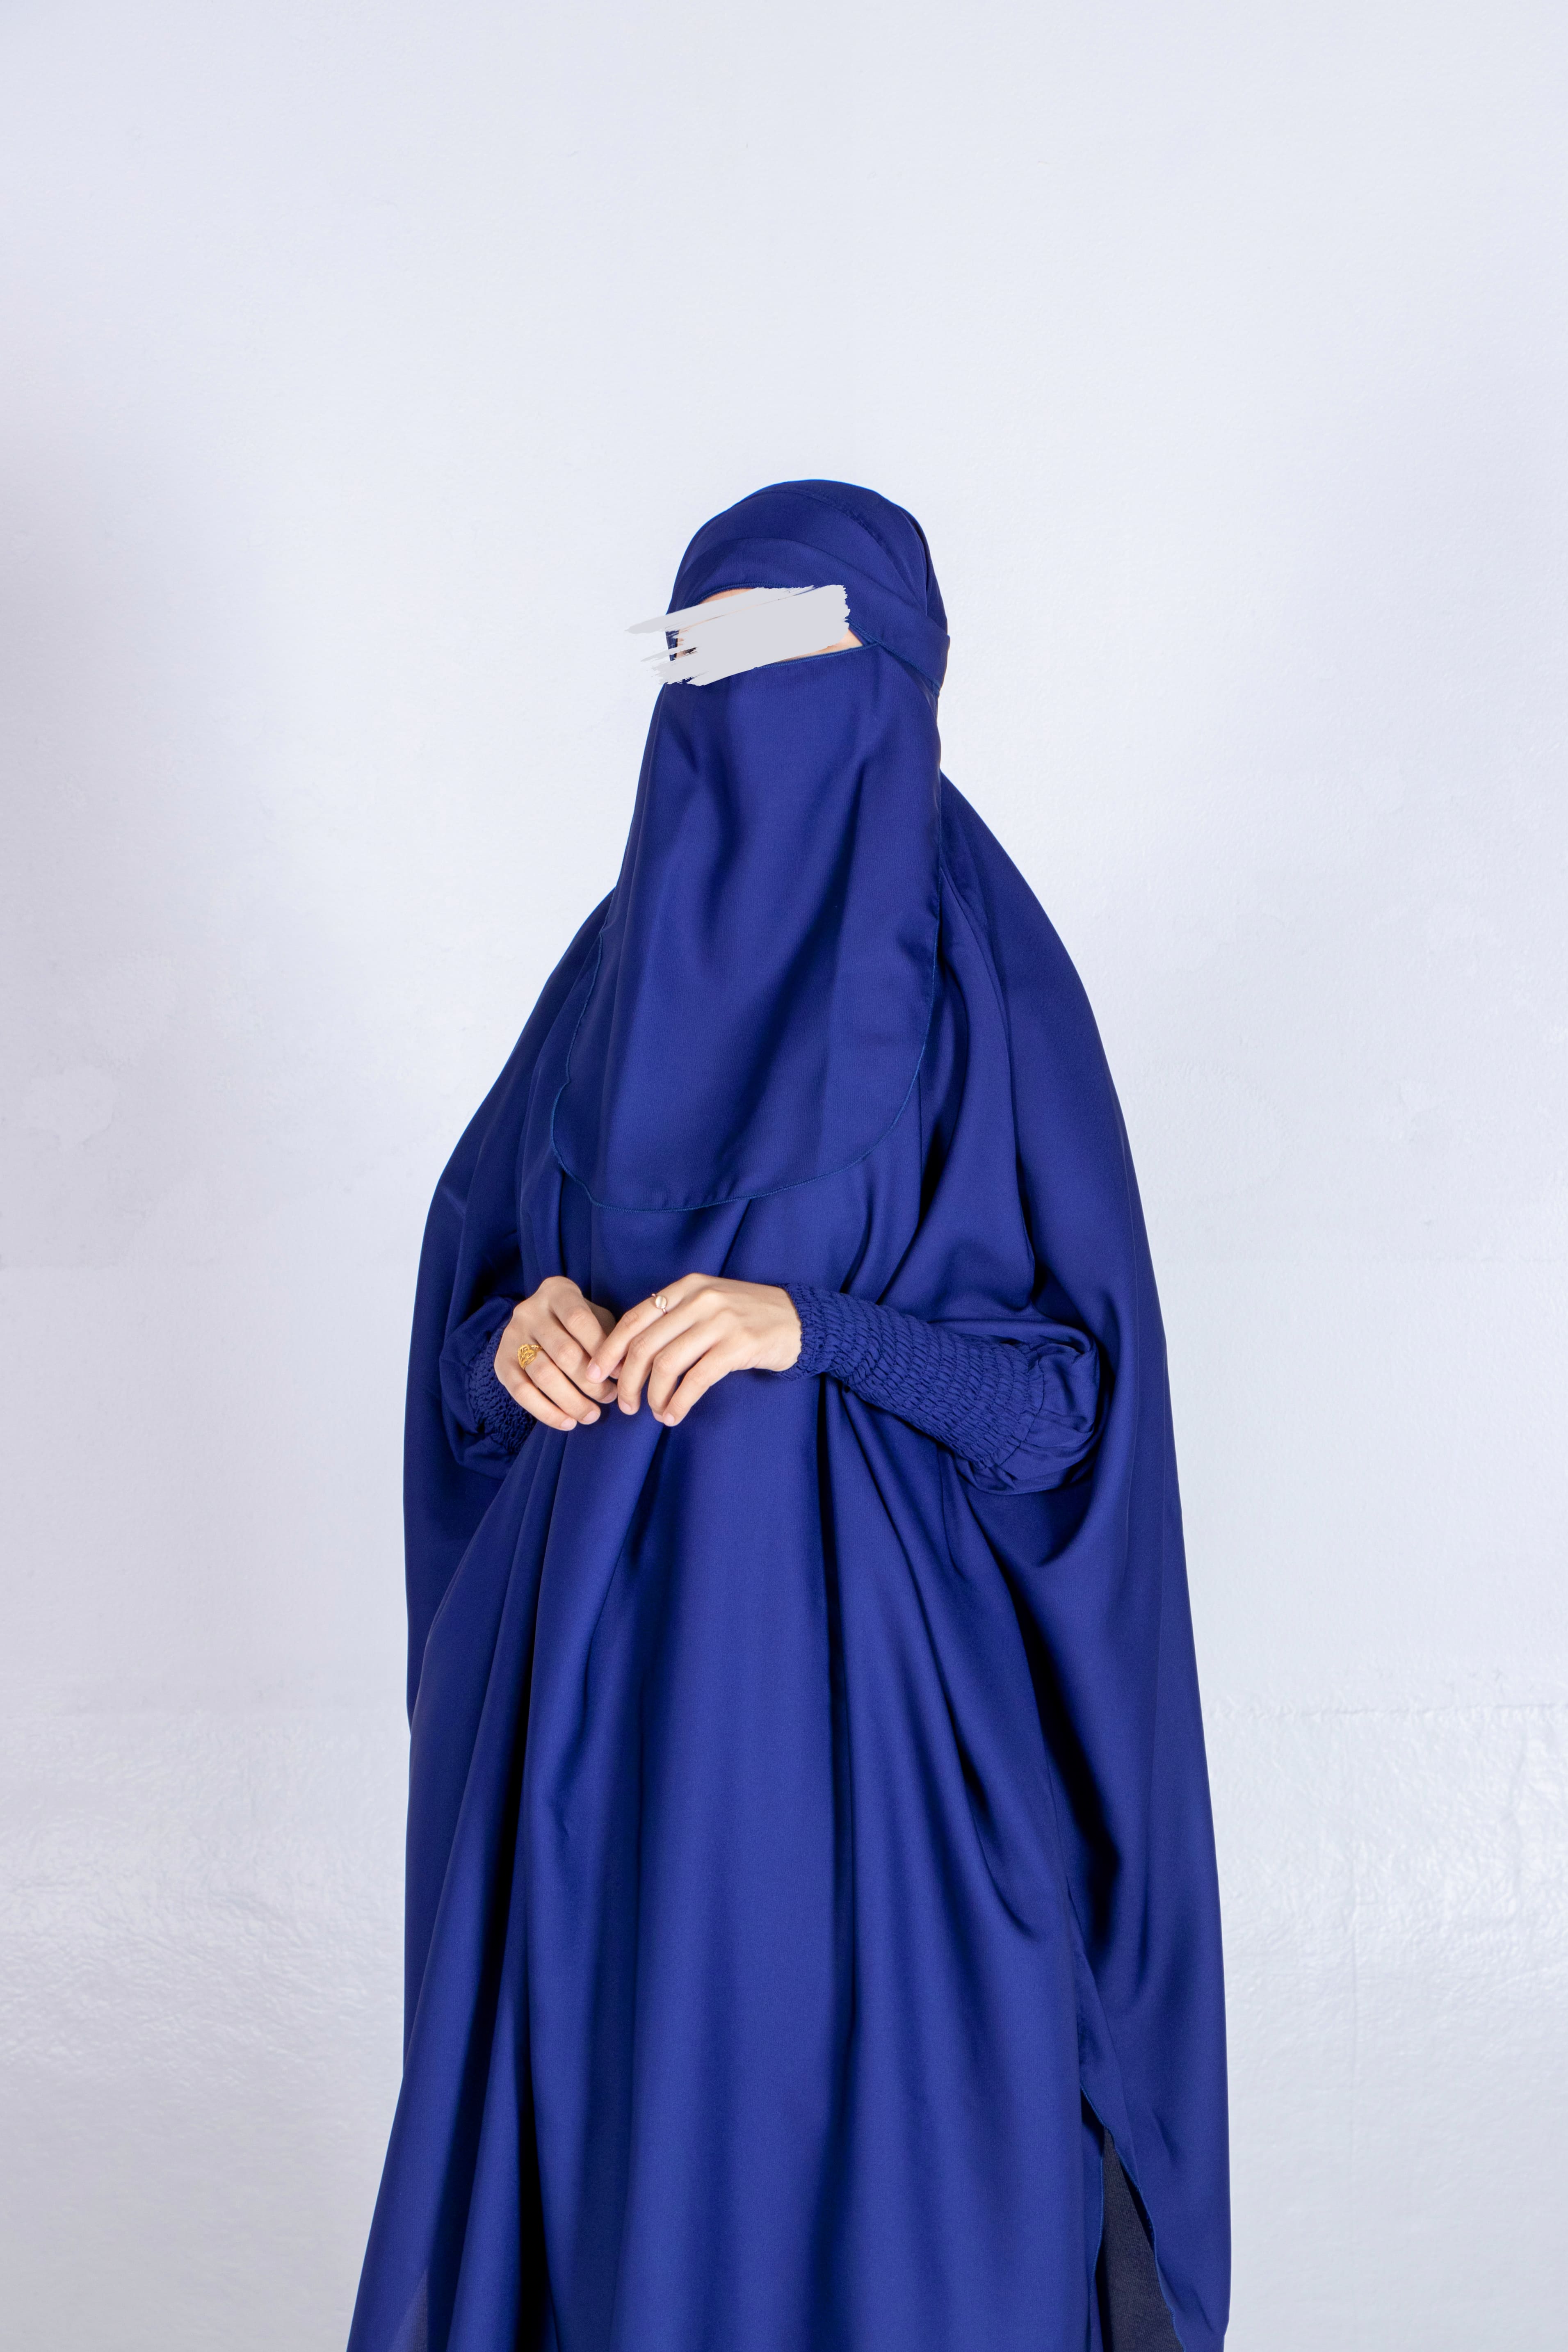 Chrome Blue Jilbab - Jilbab - Muslim Lifestyle Store